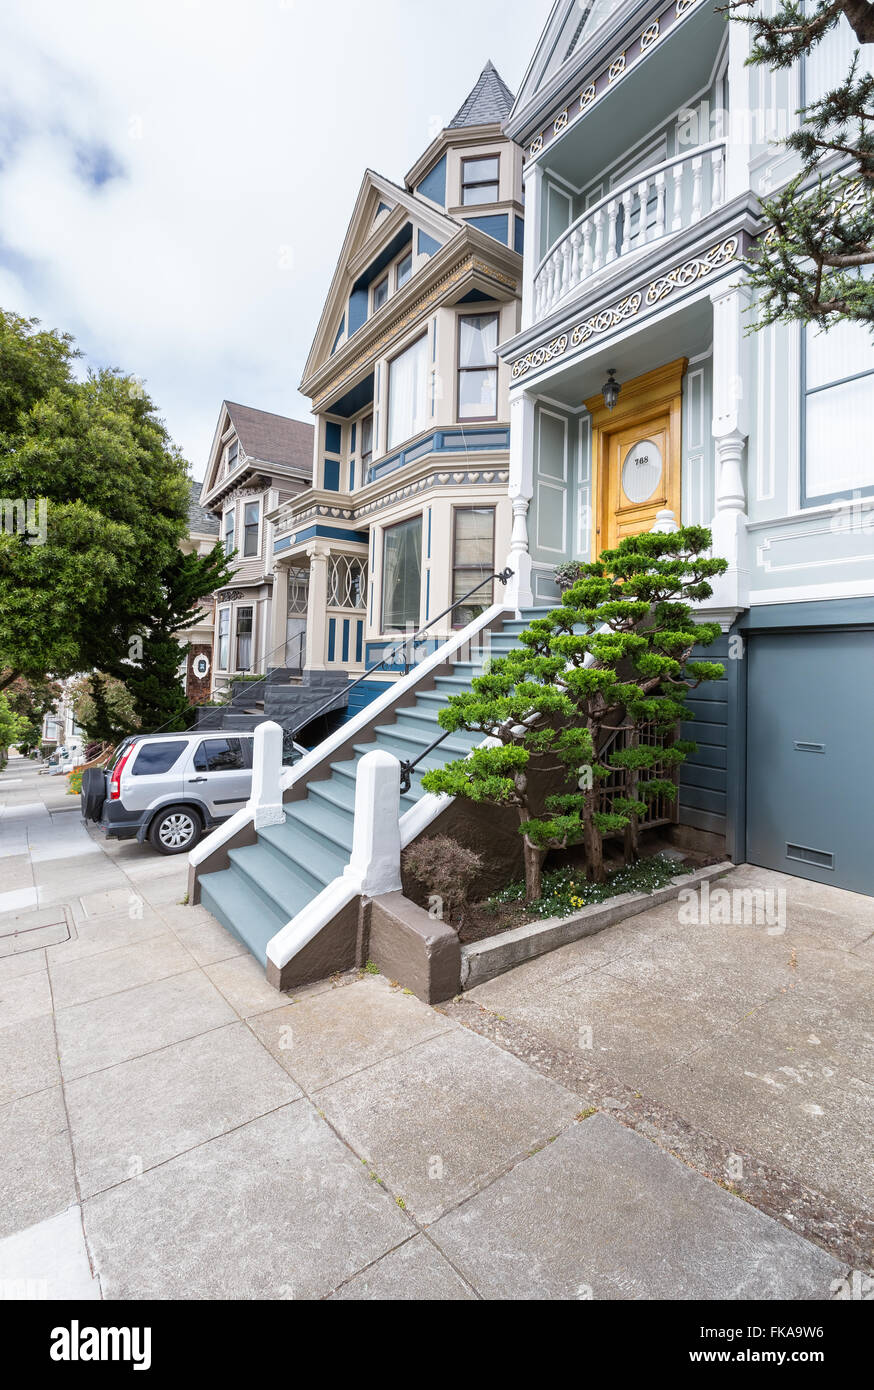 Alte Häuser von San Francisco, Kalifornien, Vereinigte Staaten von Amerika, Nordamerika Stockfoto